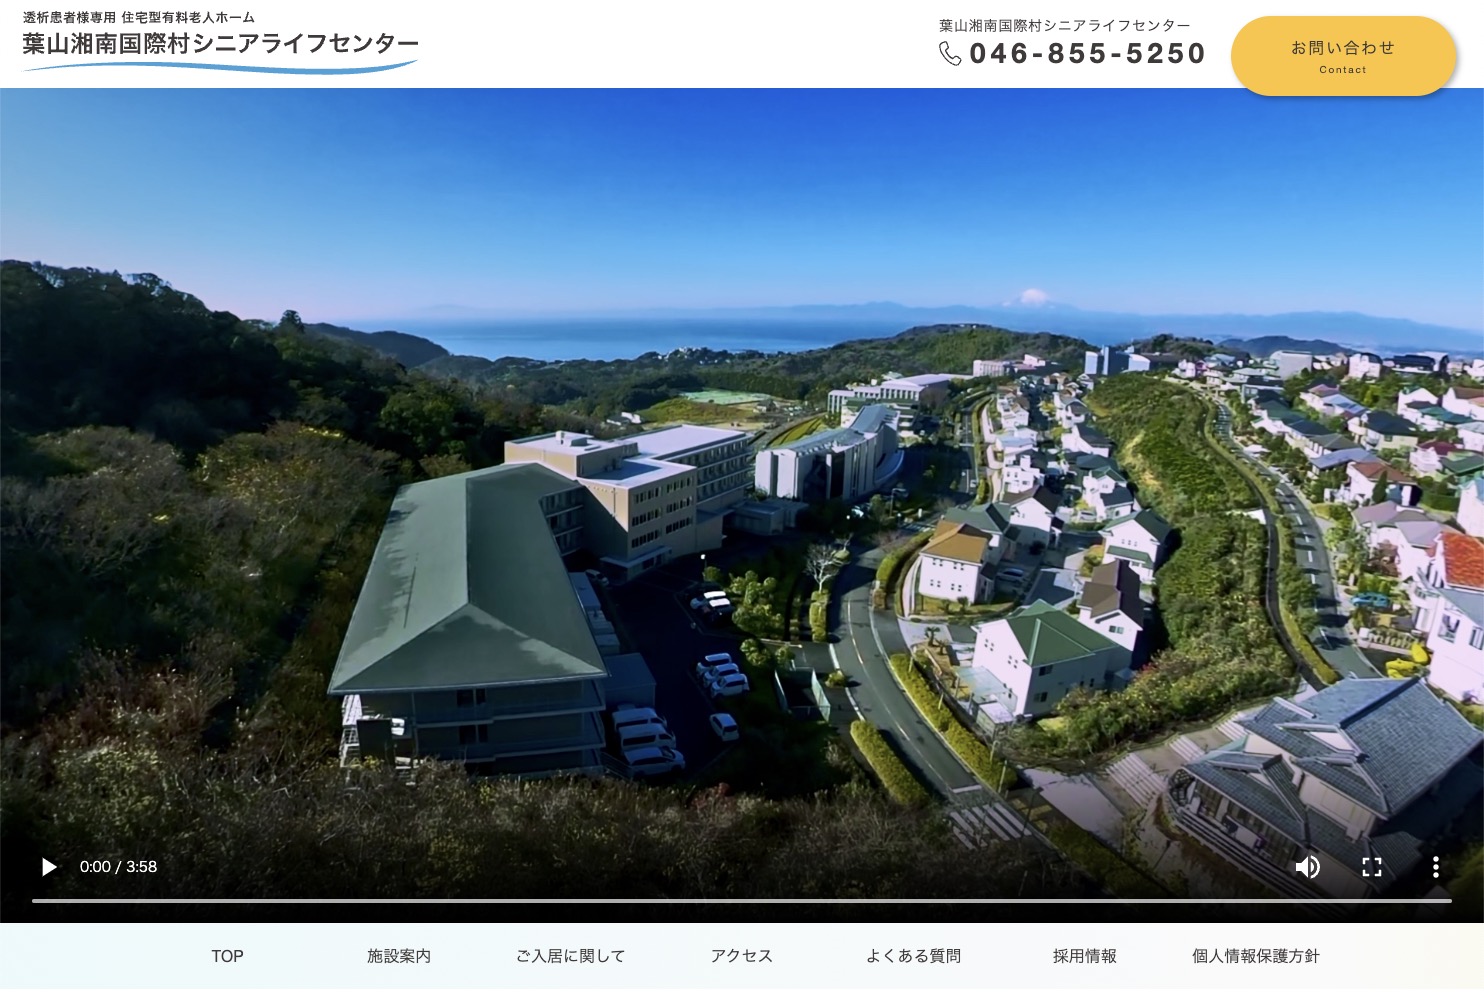 葉山湘南国際村シニアライフセンターのホームページ